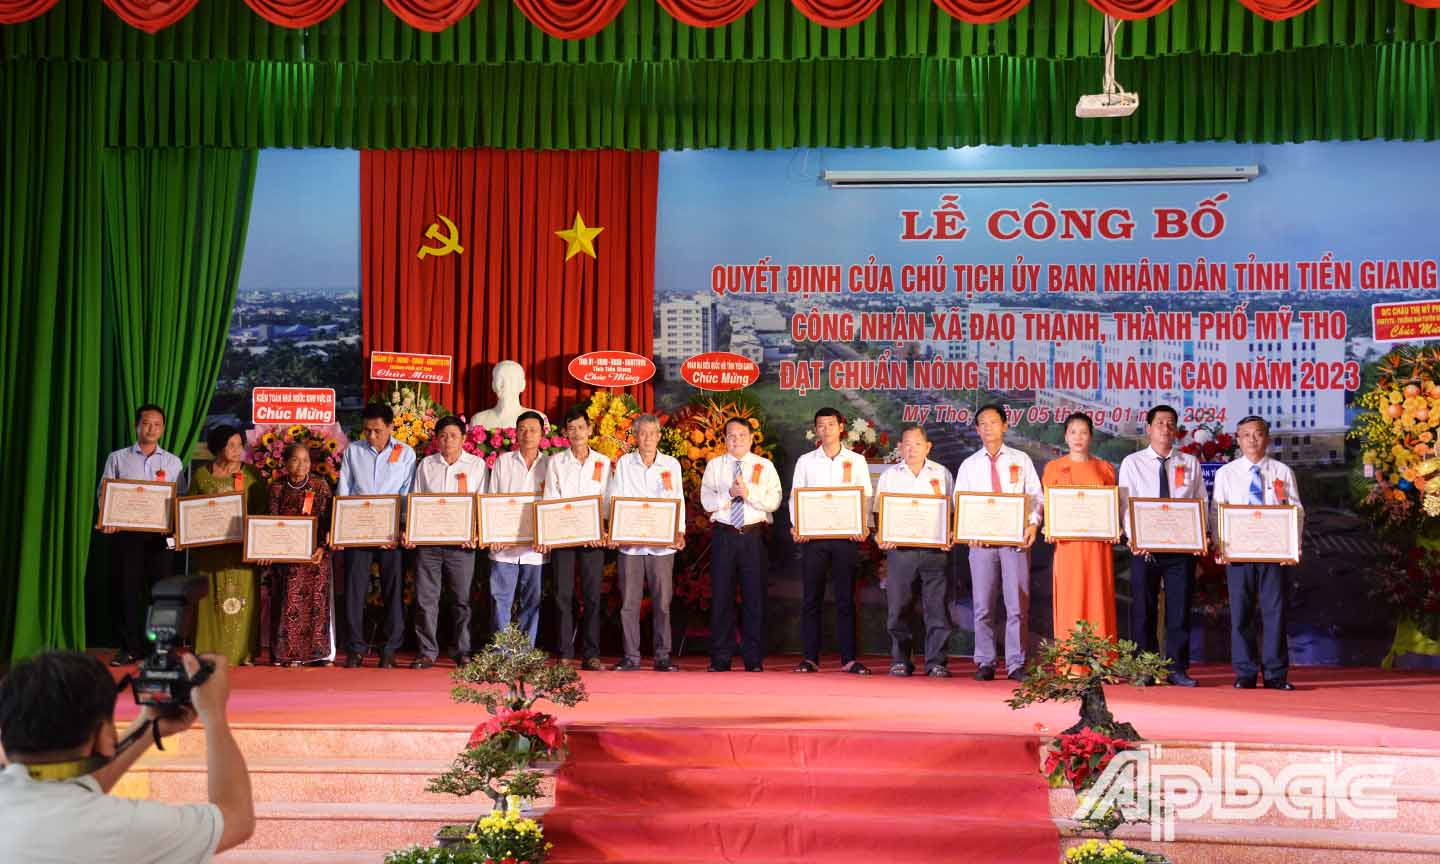 Đồng chí Phạm Văn Trọng trao bằng khen của UBND tỉnh cho các các nhân có thành tích trong sự nghiệp xây dựng và phát triển Sở TN&MT giai đoạn 2003 - 2023.